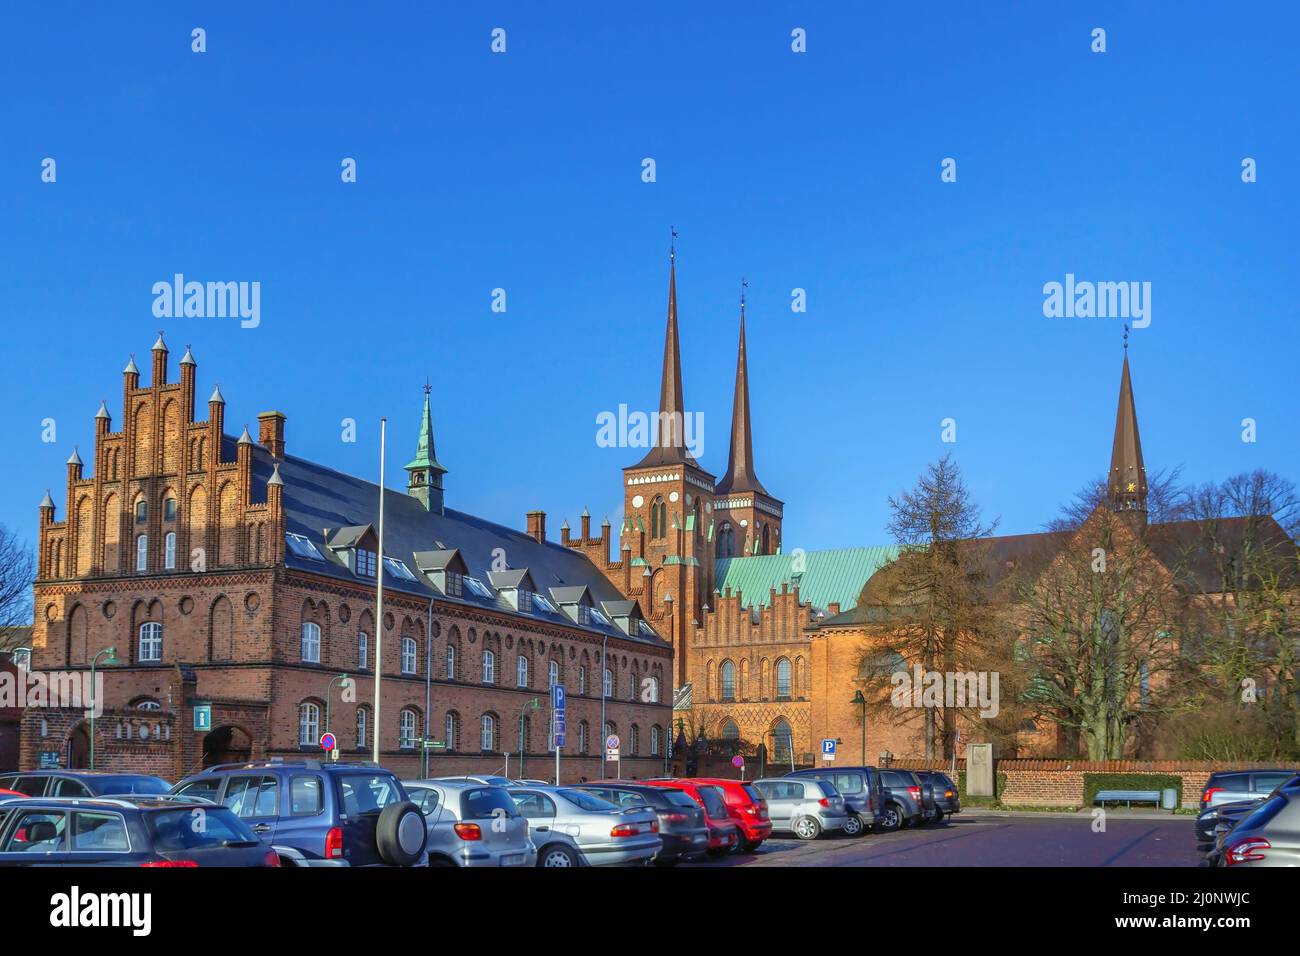 Square in Roskilde, Denmark Stock Photo